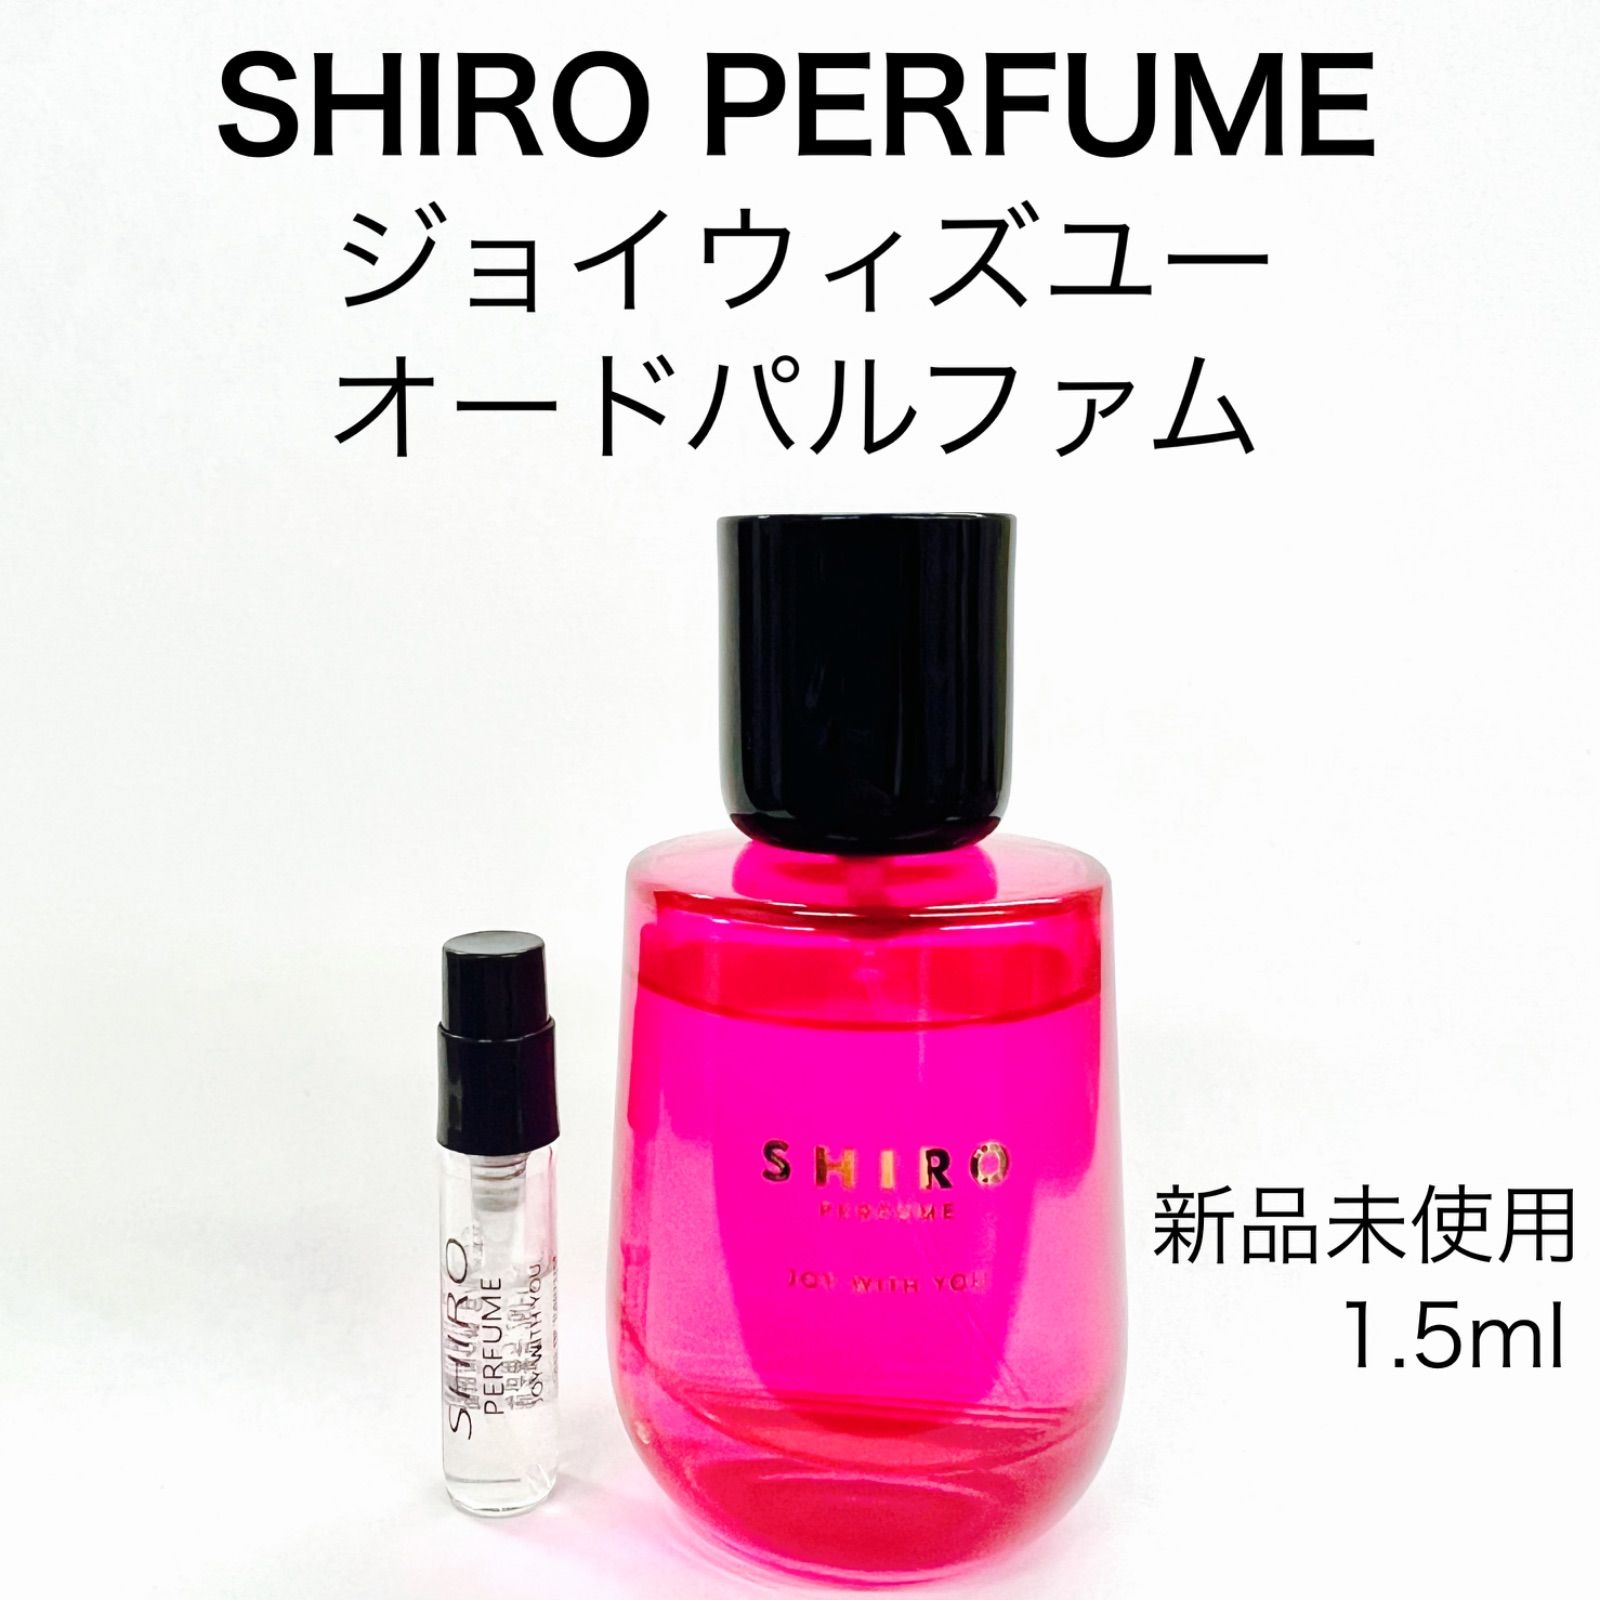 SHIRO PERFUME シロパフューム ジョイウィズユー 香水 1.5ml - セット